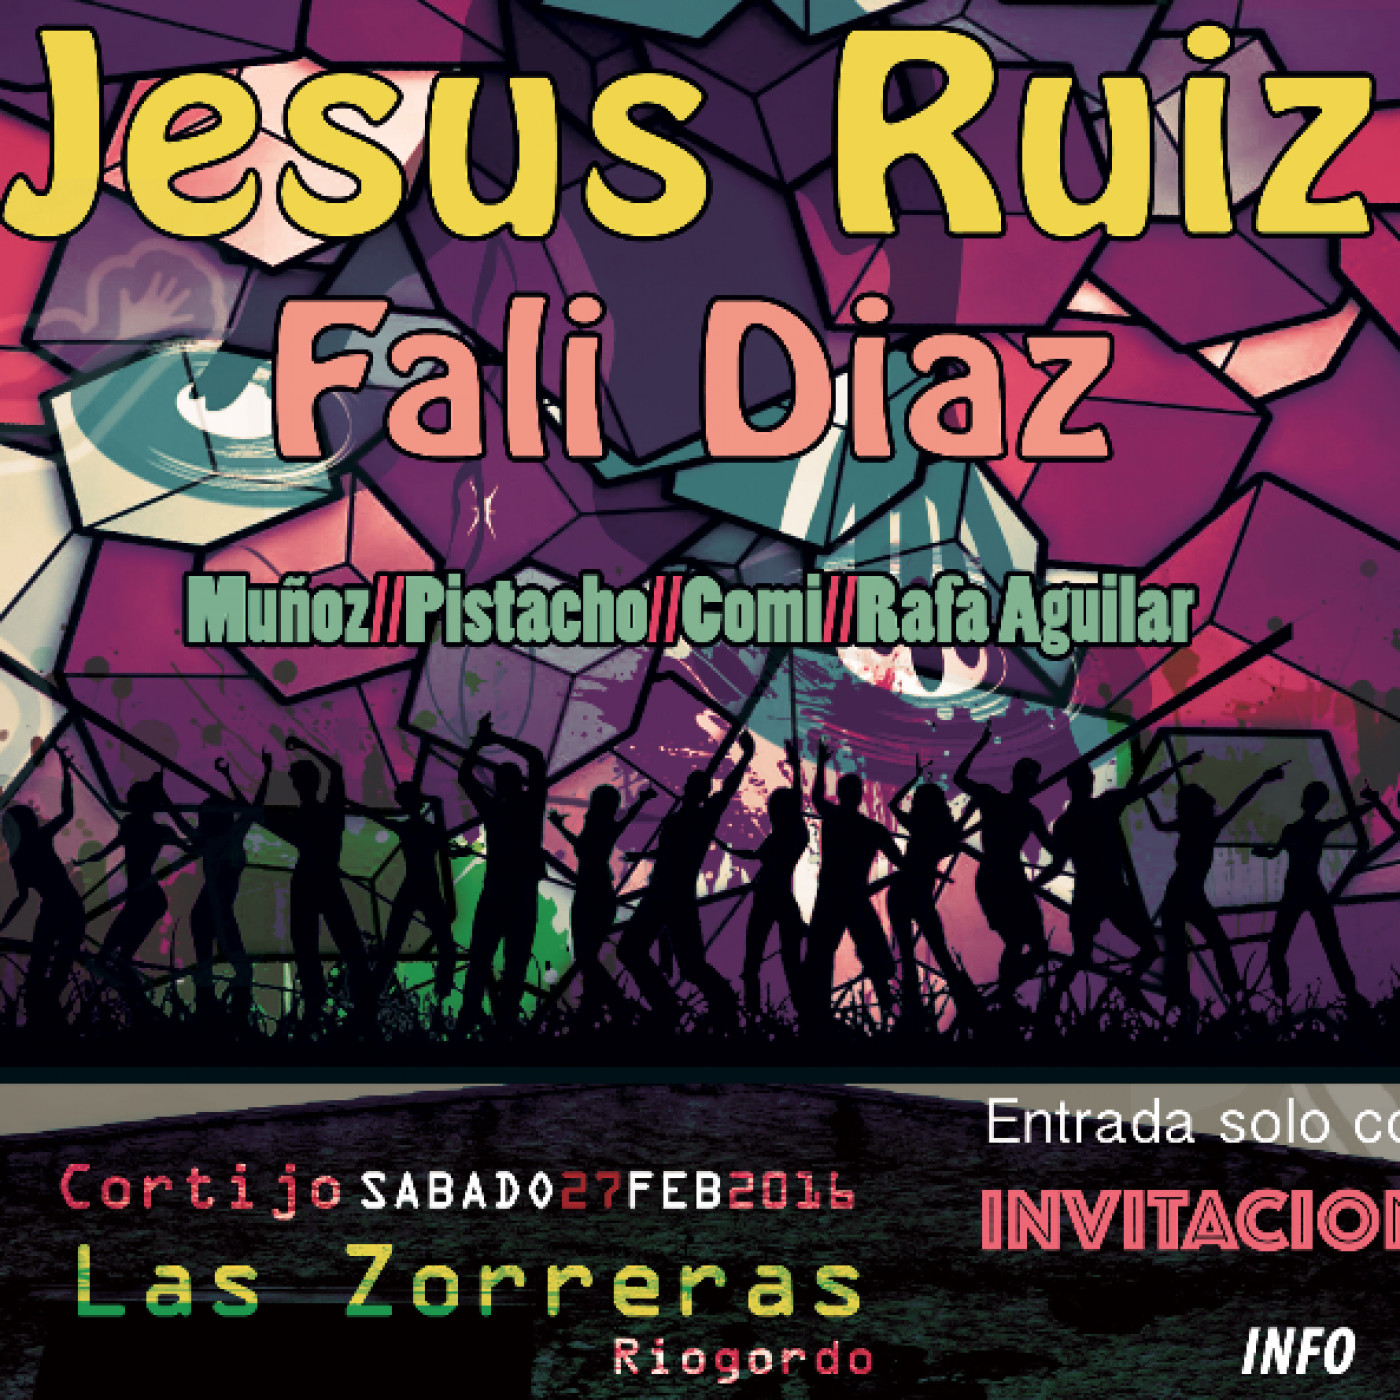 Retro Party Las Zorreras -  Riogordo -  27FEB 2016